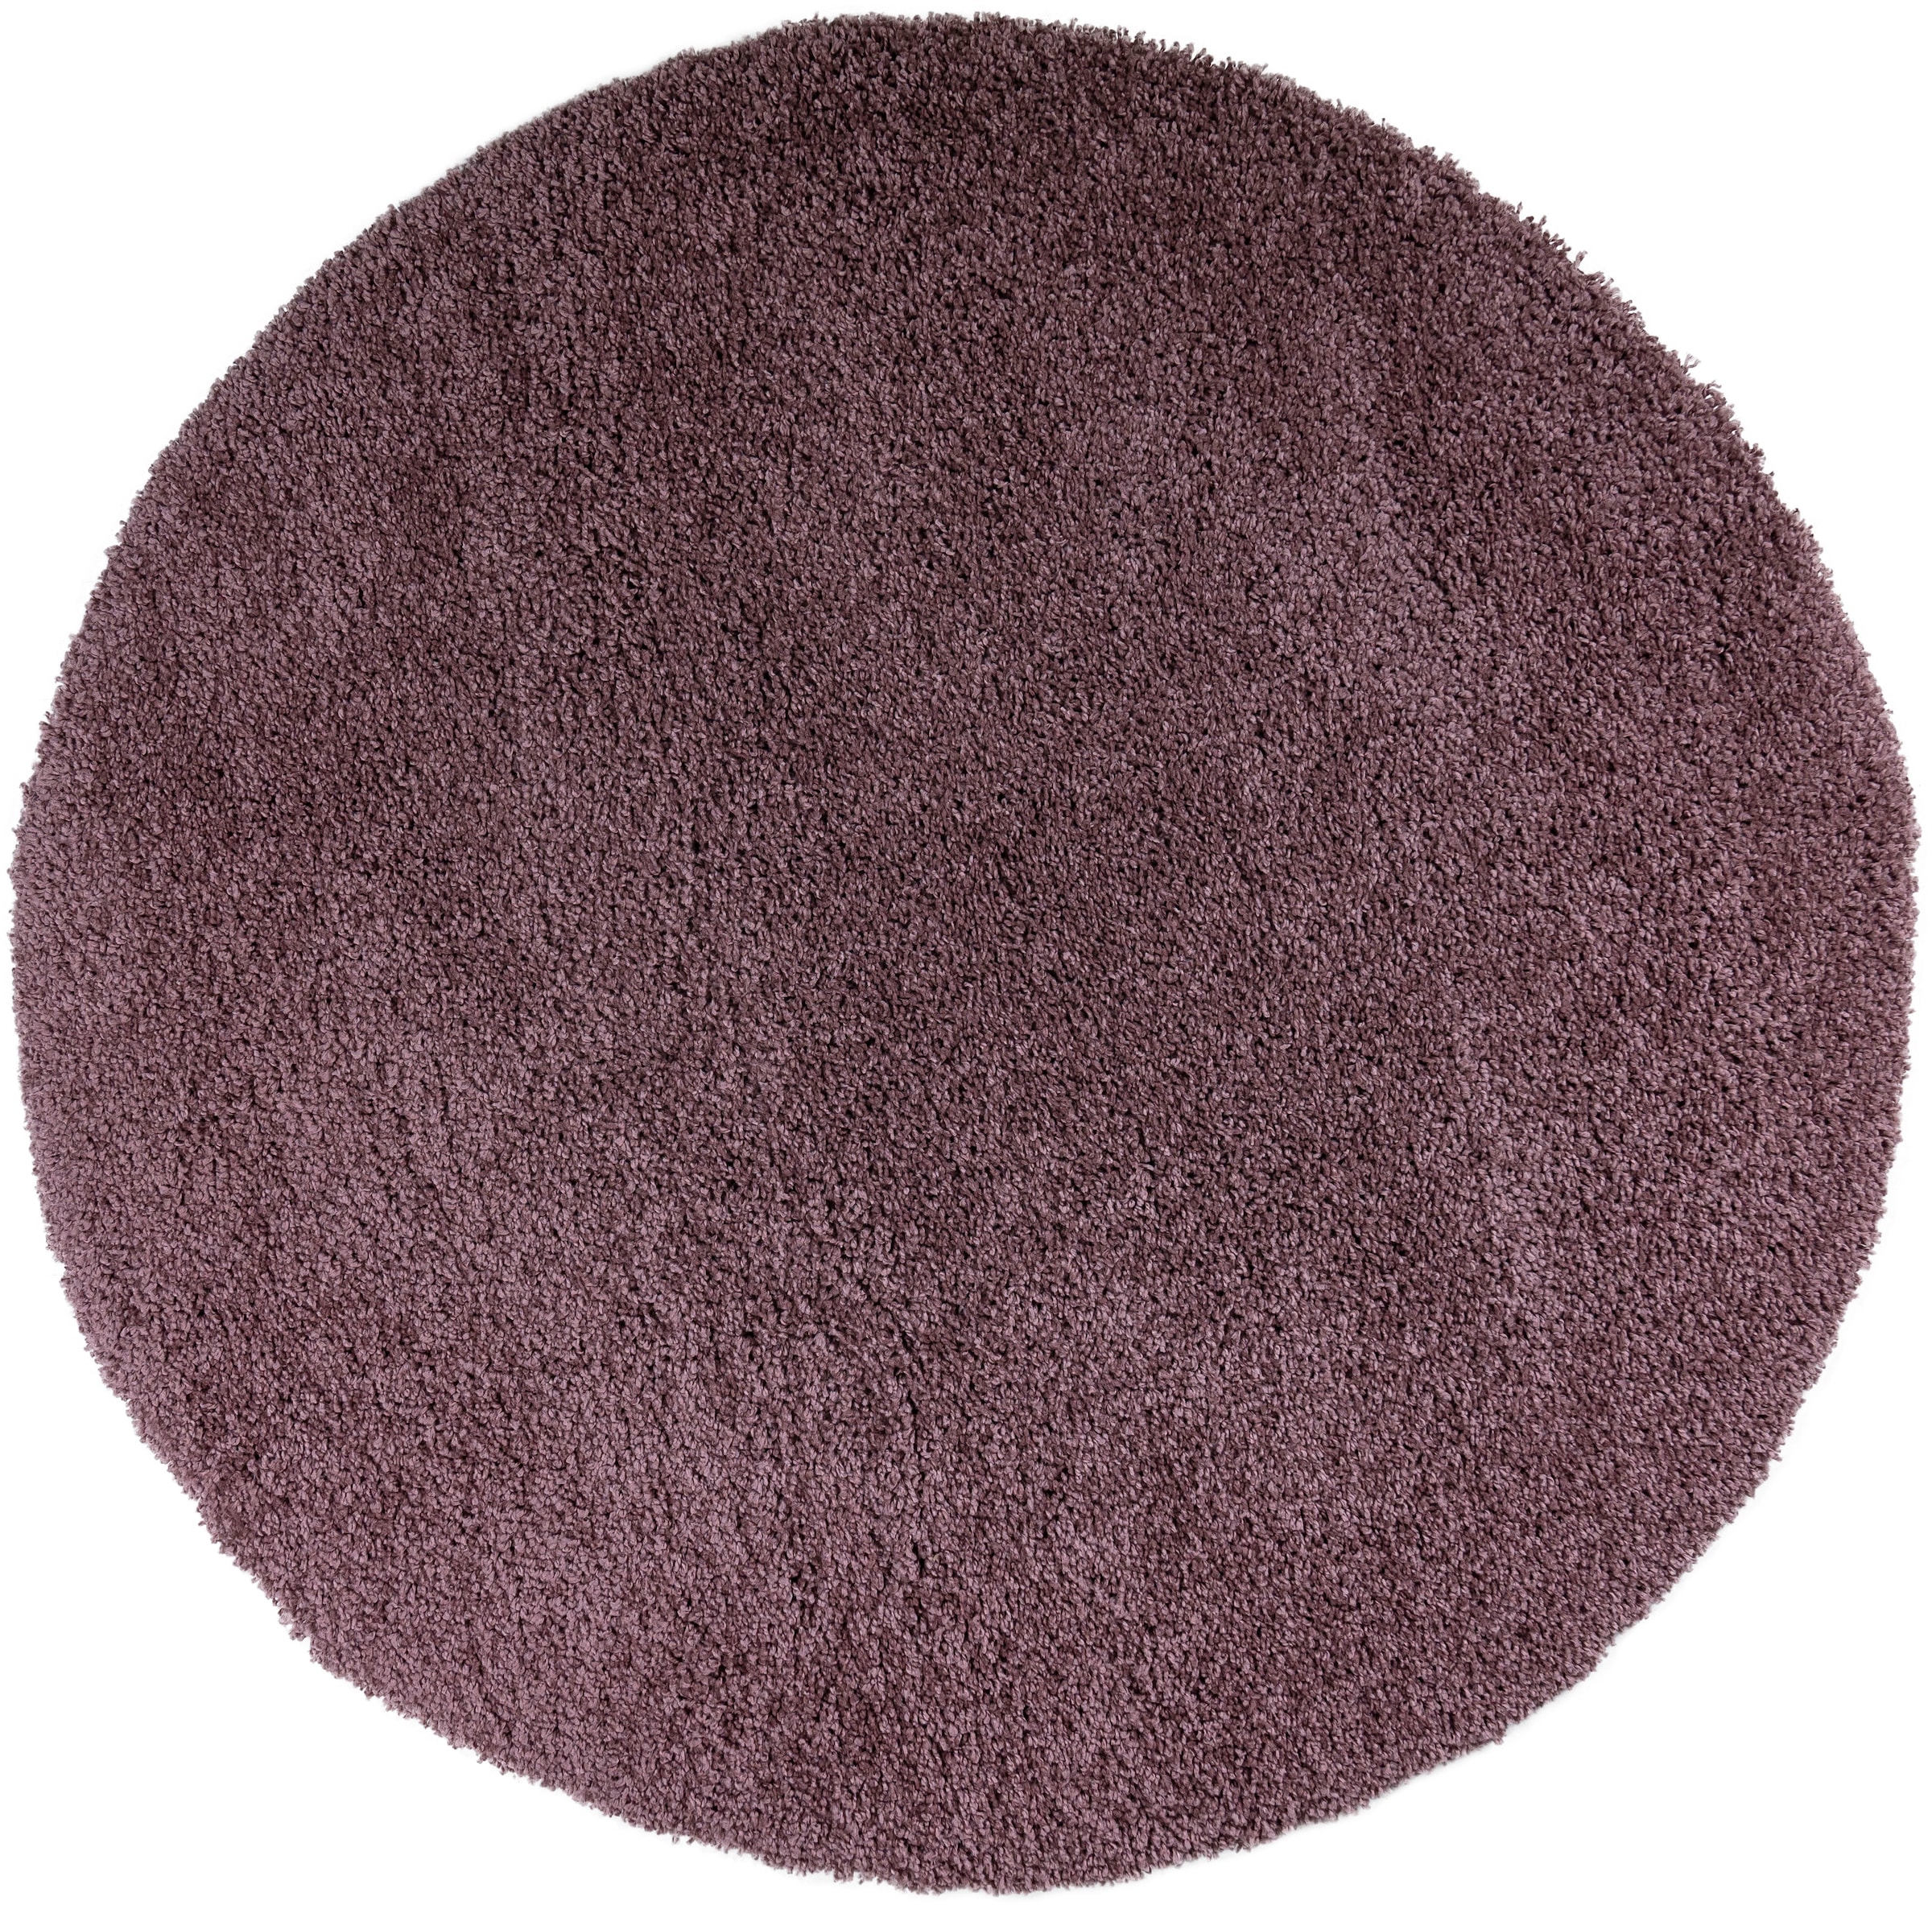 Teppich »Viva Teppich rund«, rund, Uni-Farben, einfarbig, besonders weich und kuschelig